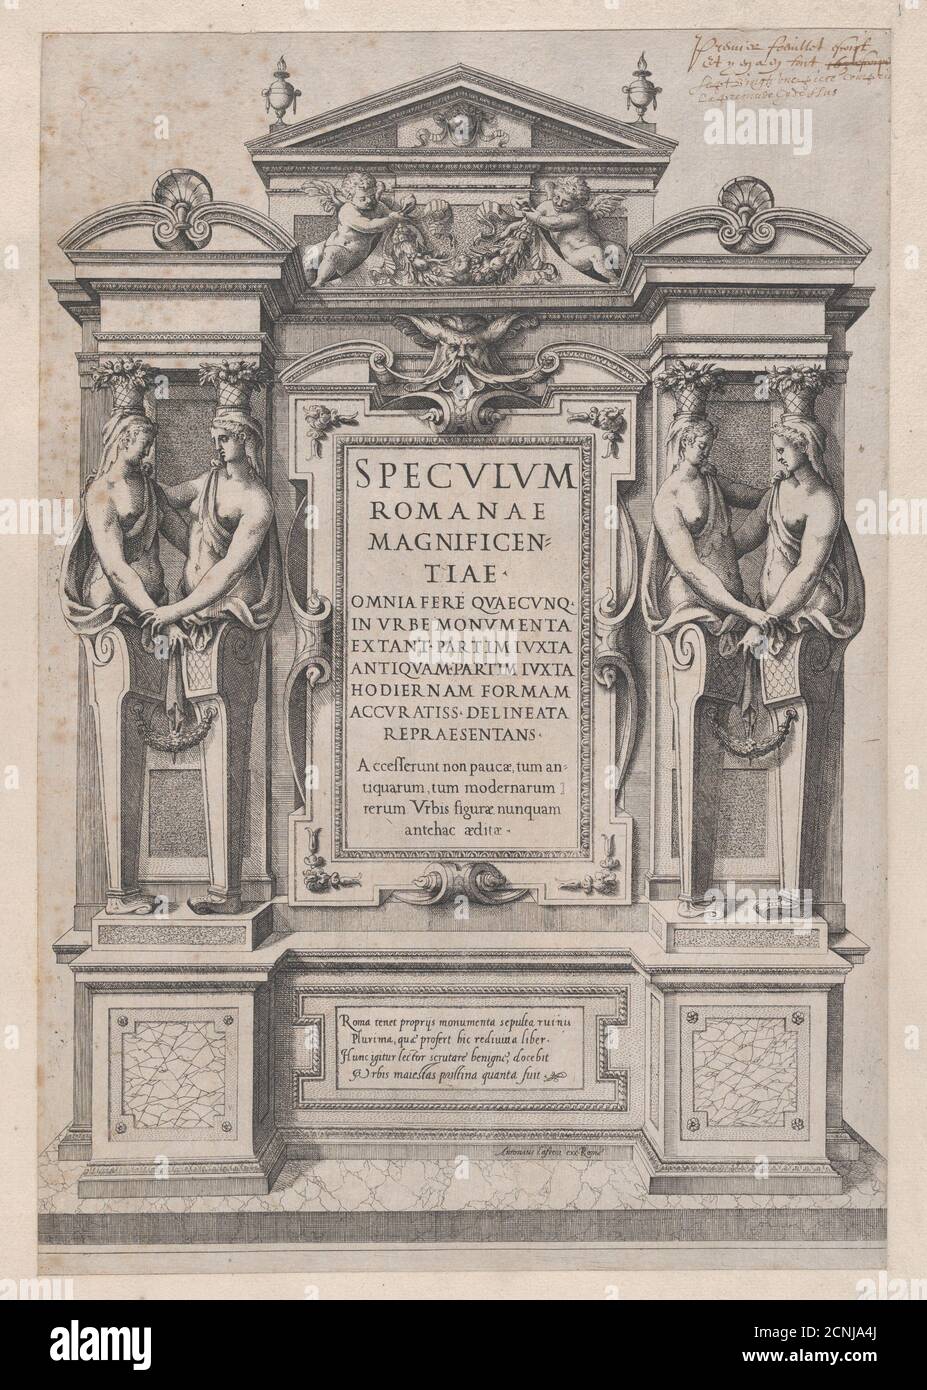 Speculum Romanae Magnificentiae: Titolo pagina incisa all'interno del bordo architettonico e scultoreo, 1573-77. Foto Stock